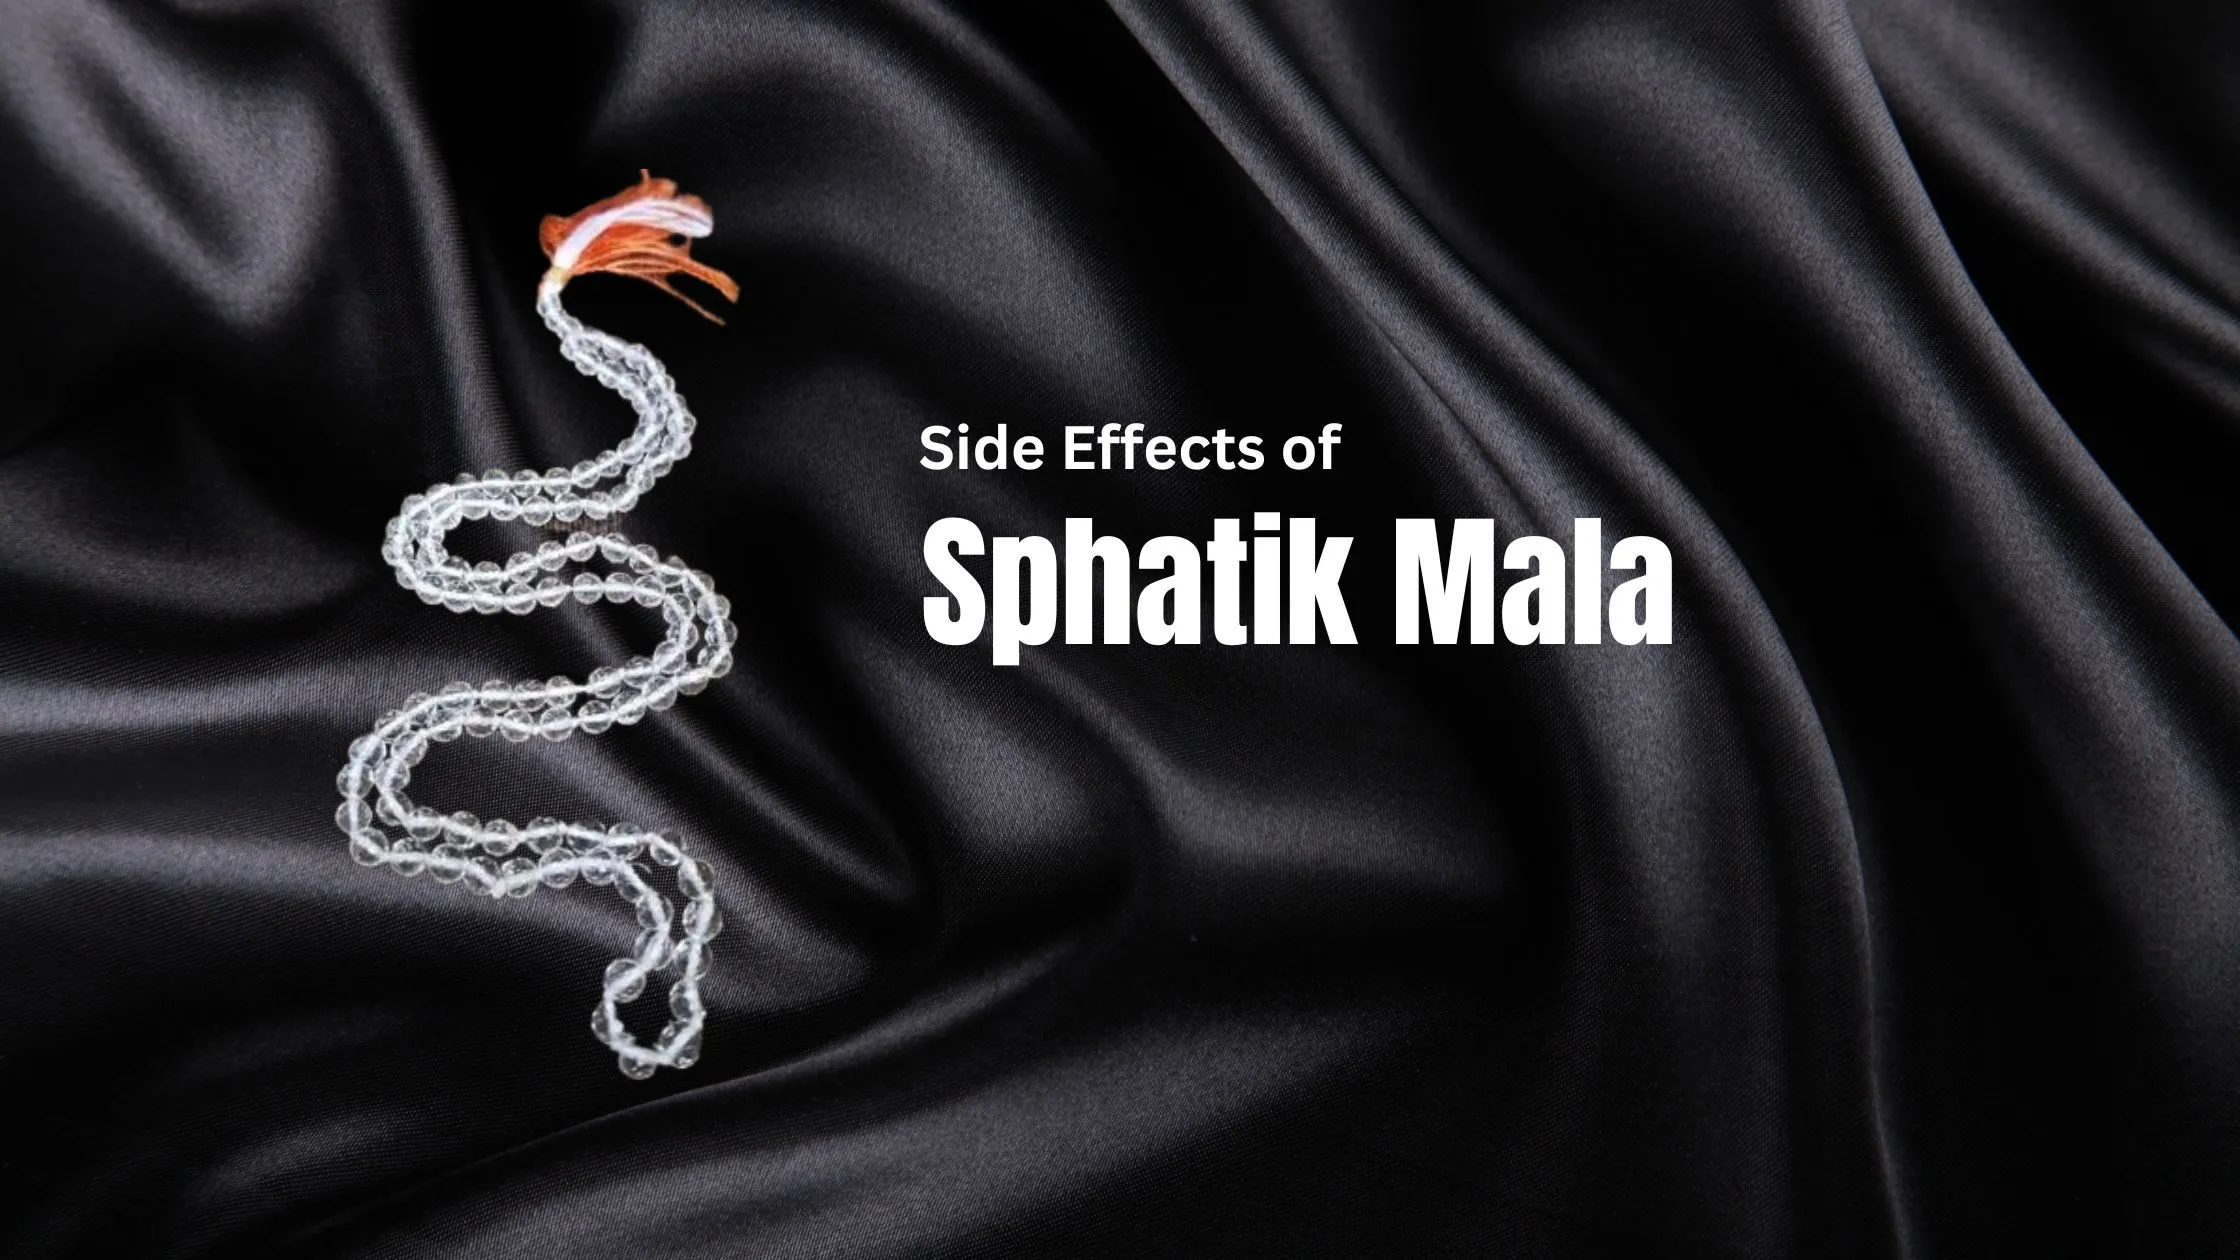 Side Effects of Sphatik Mala